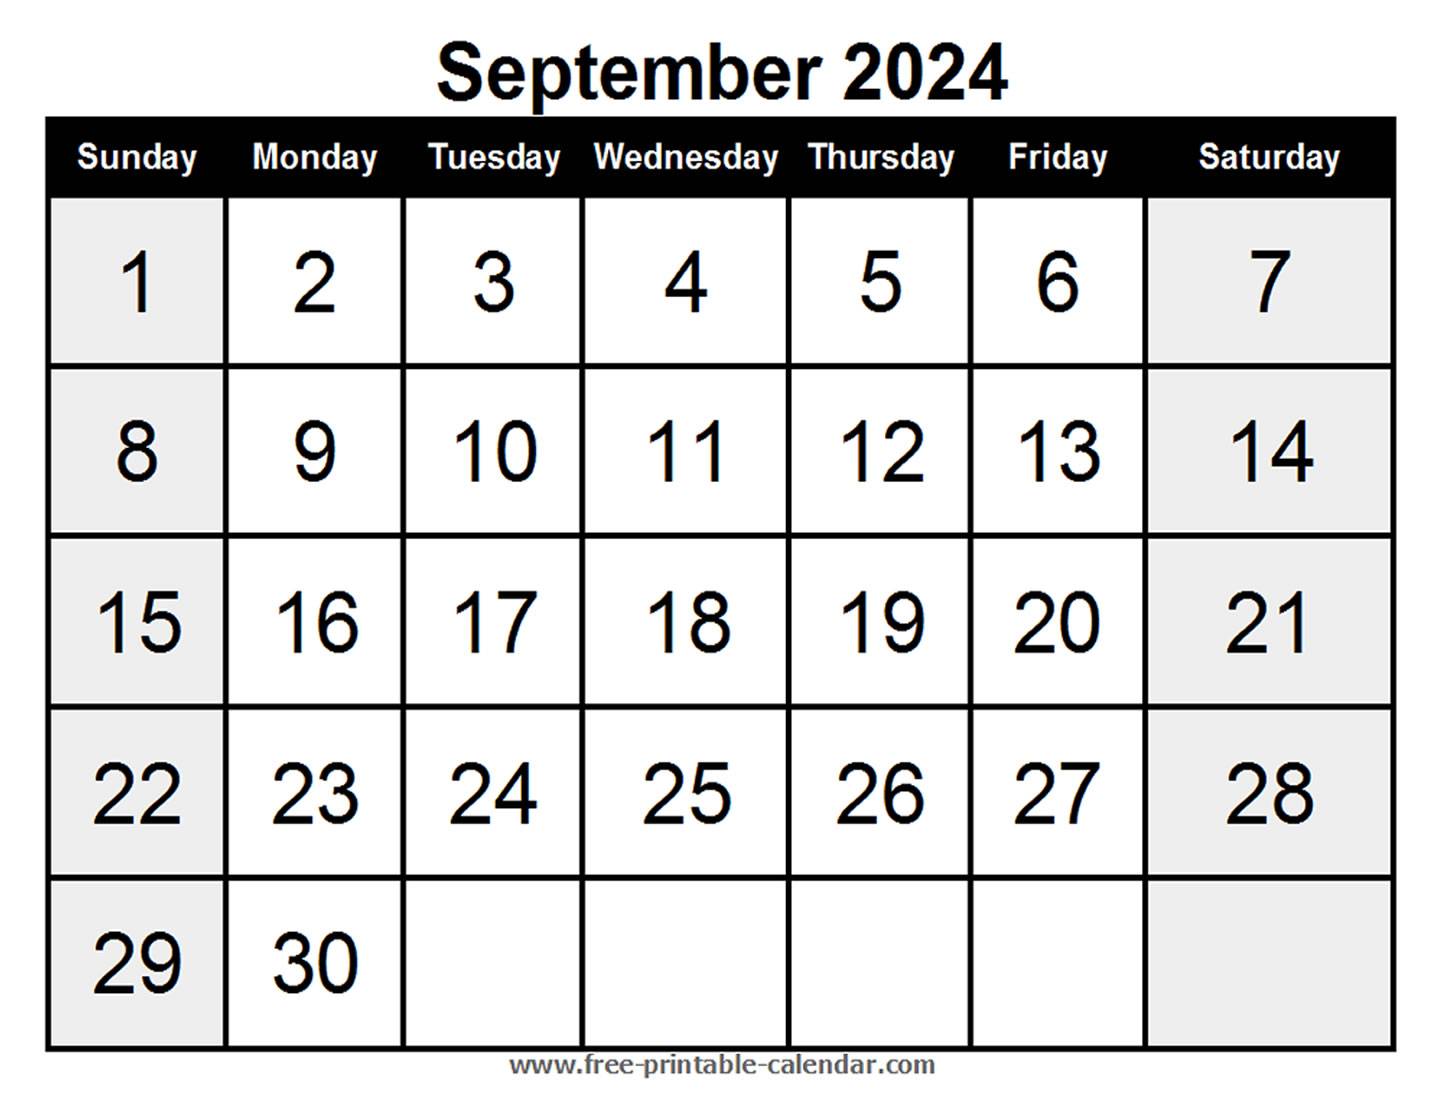 Blank Calendar September 2024 - Free-printable-calendar.com